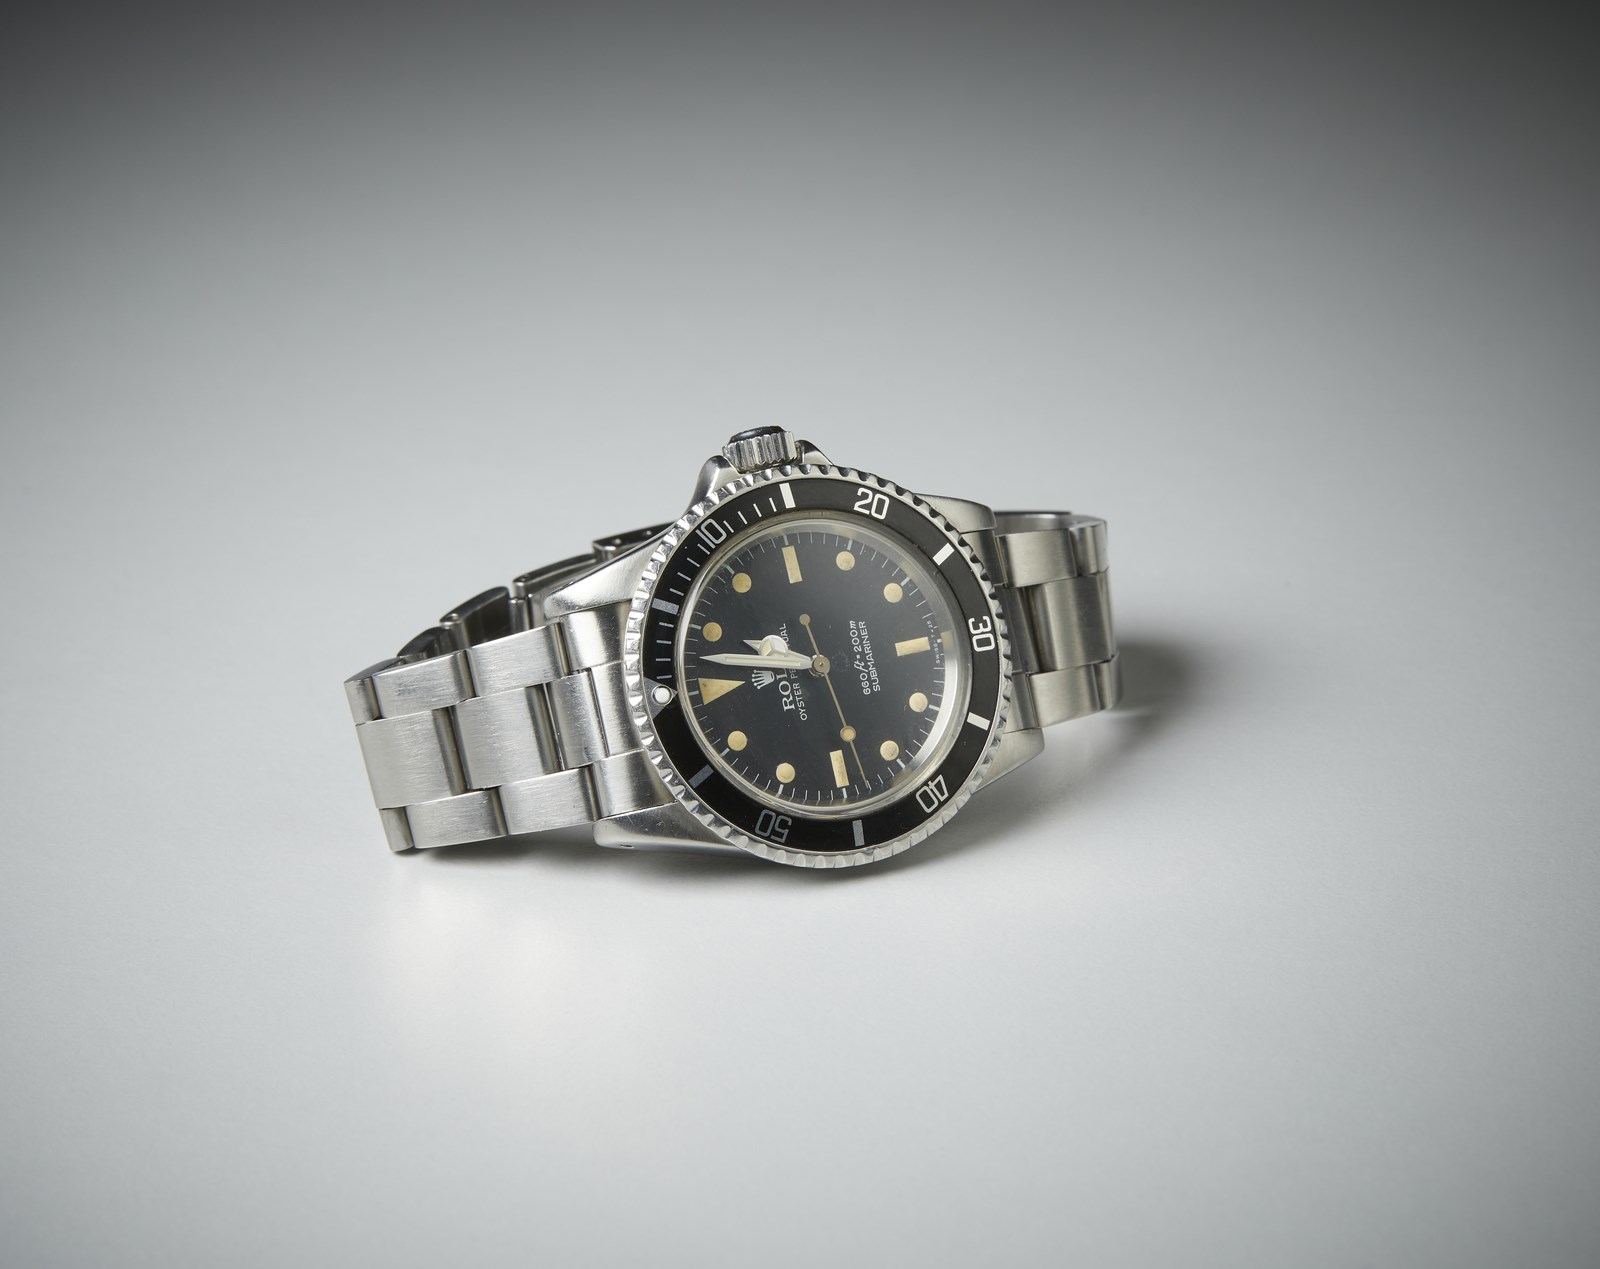 Stainless steel Rolex watch submariner model.  (Rolex )